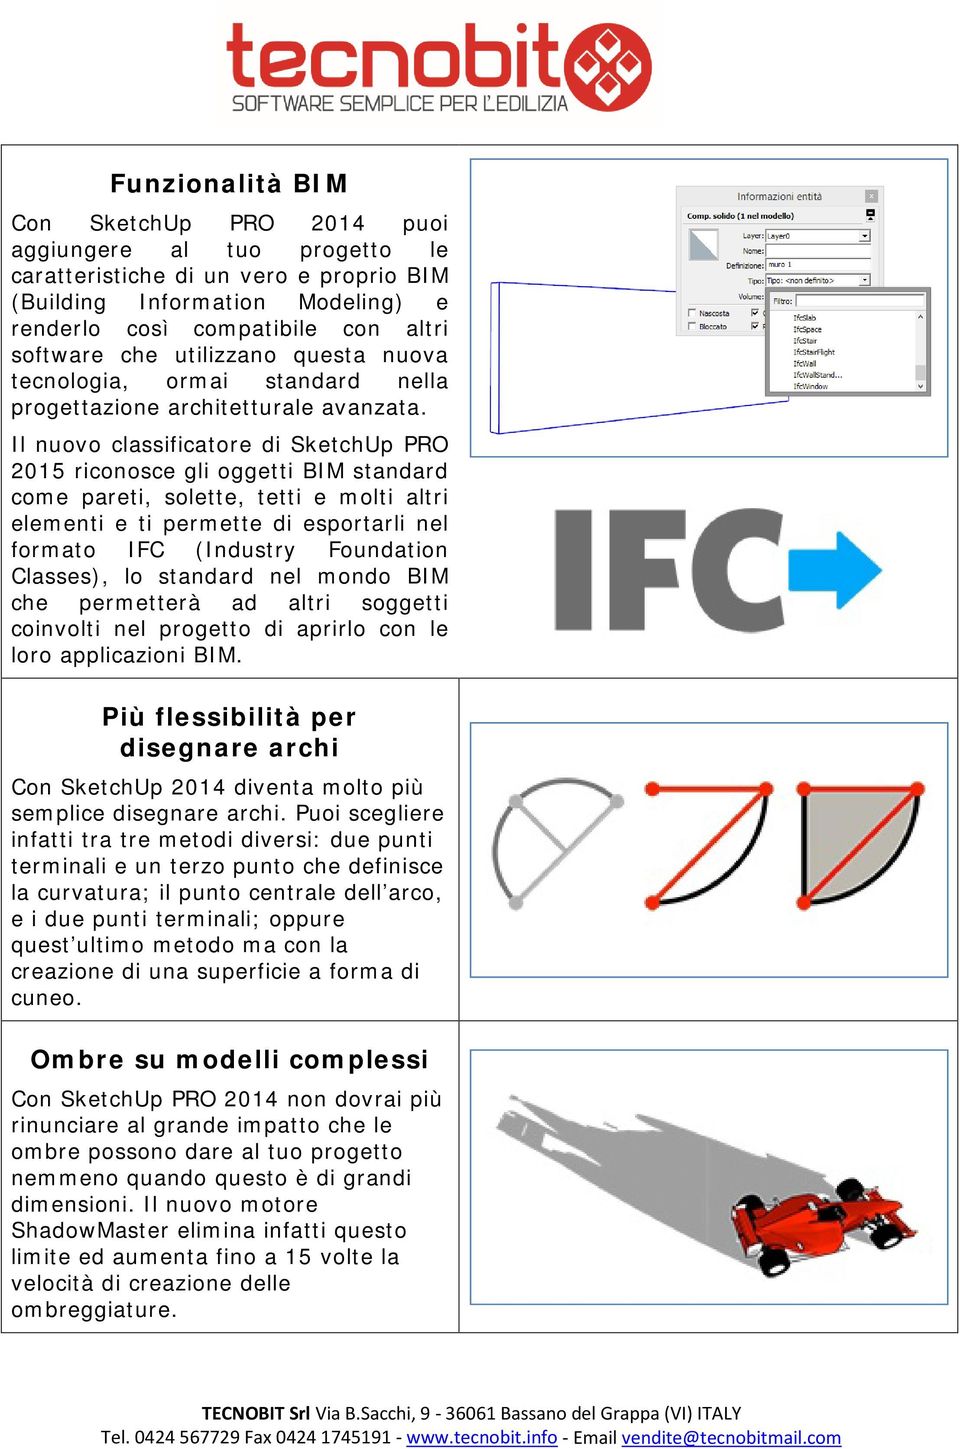 Il nuovo classificatore di SketchUp PRO 2015 riconosce gli oggetti BIM standard come pareti, solette, tetti e molti altri elementi e ti permette di esportarli nel formato IFC (Industry Foundation